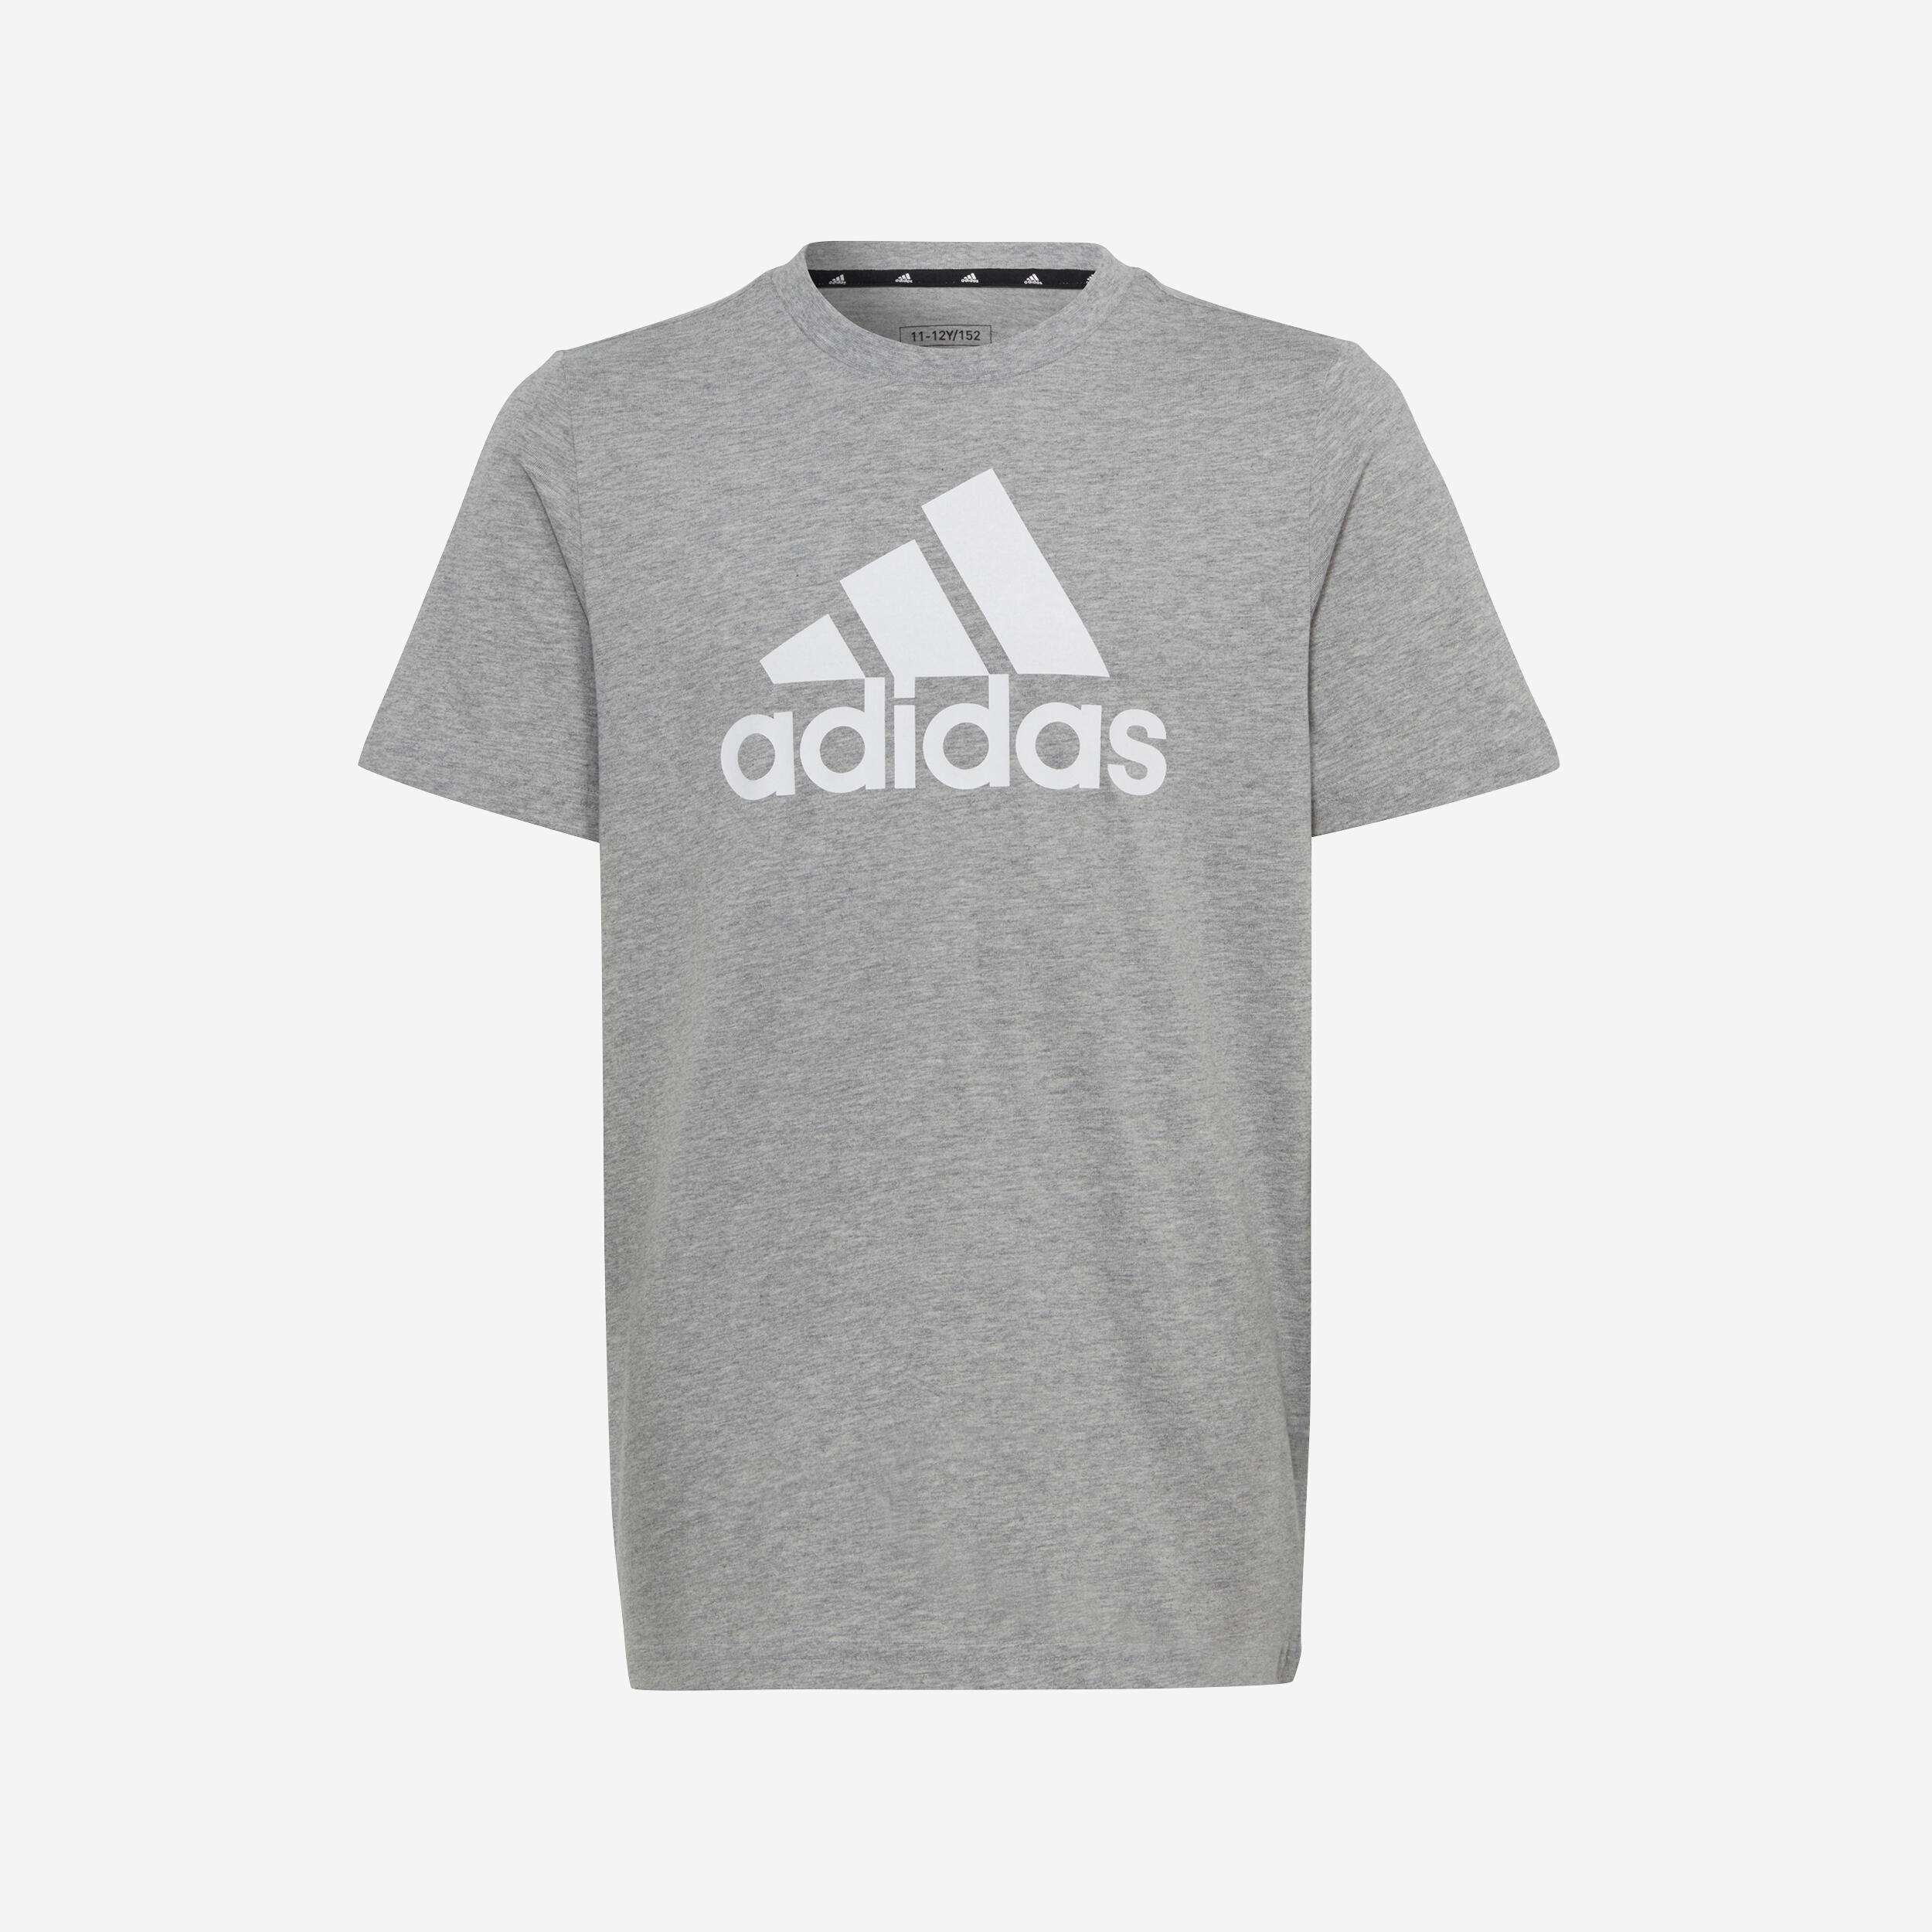 ADIDAS Kids' T-Shirt - Grey/White Printed Logo